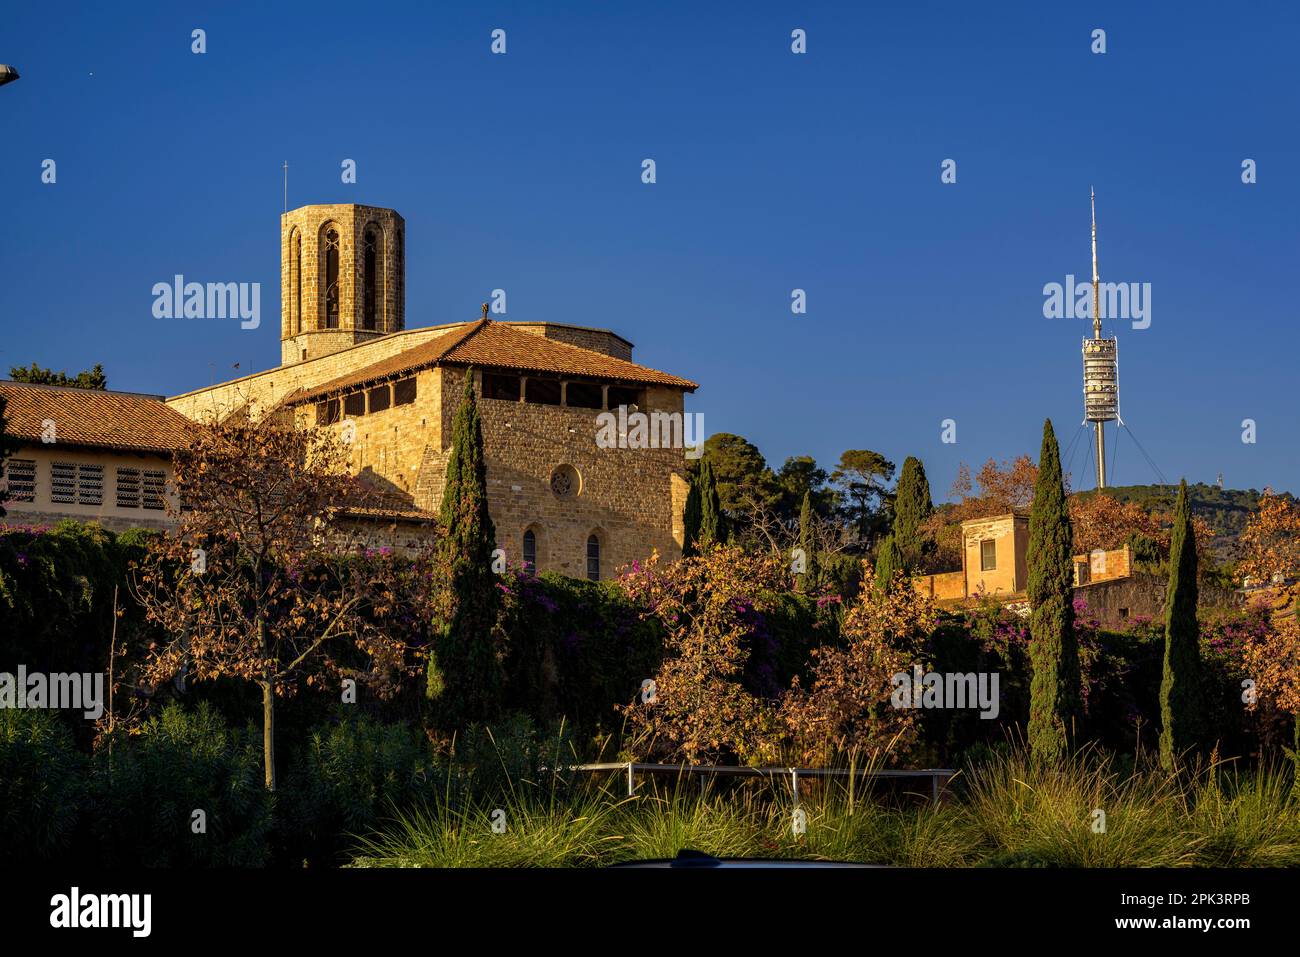 Monastero reale di Pedralbes e la torre di Collserola al tramonto (Barcellona, Catalogna, Spagna) ESP: Real Monasterio de Pedralbes y Torre de Collserola Foto Stock